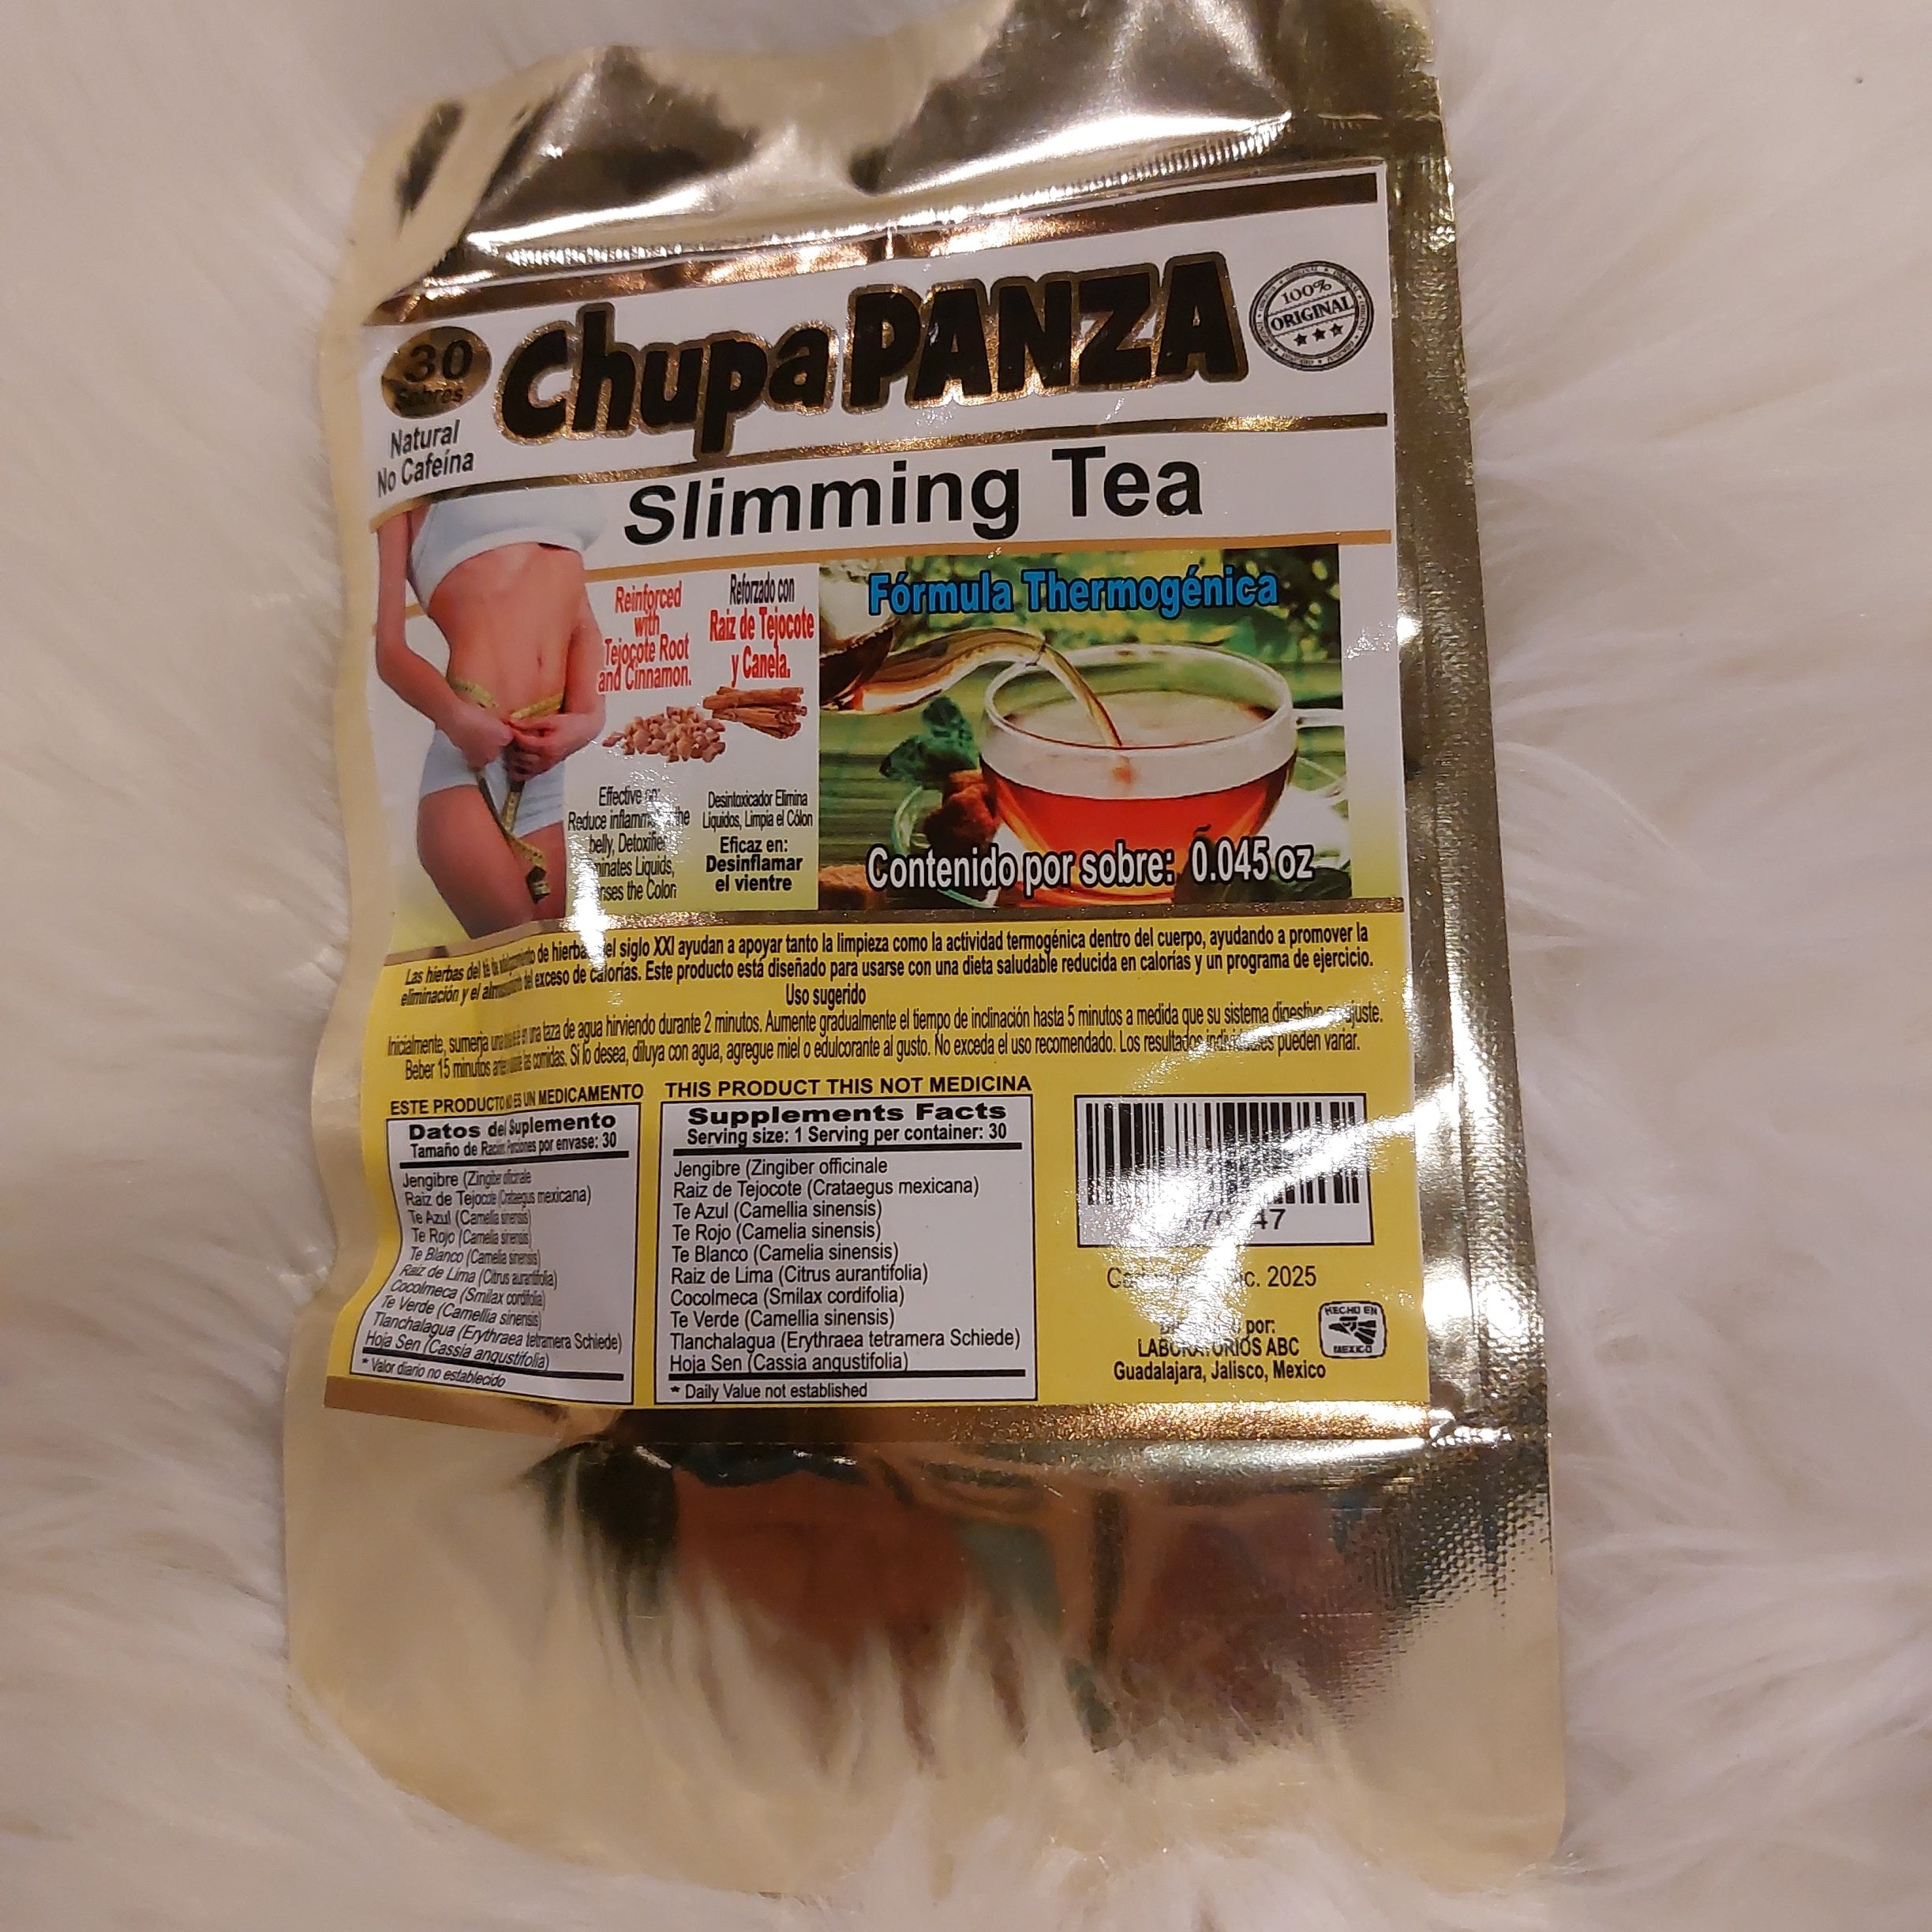 Chupa Panza Slimming Tea (30)bags – Janets beauty shop.com